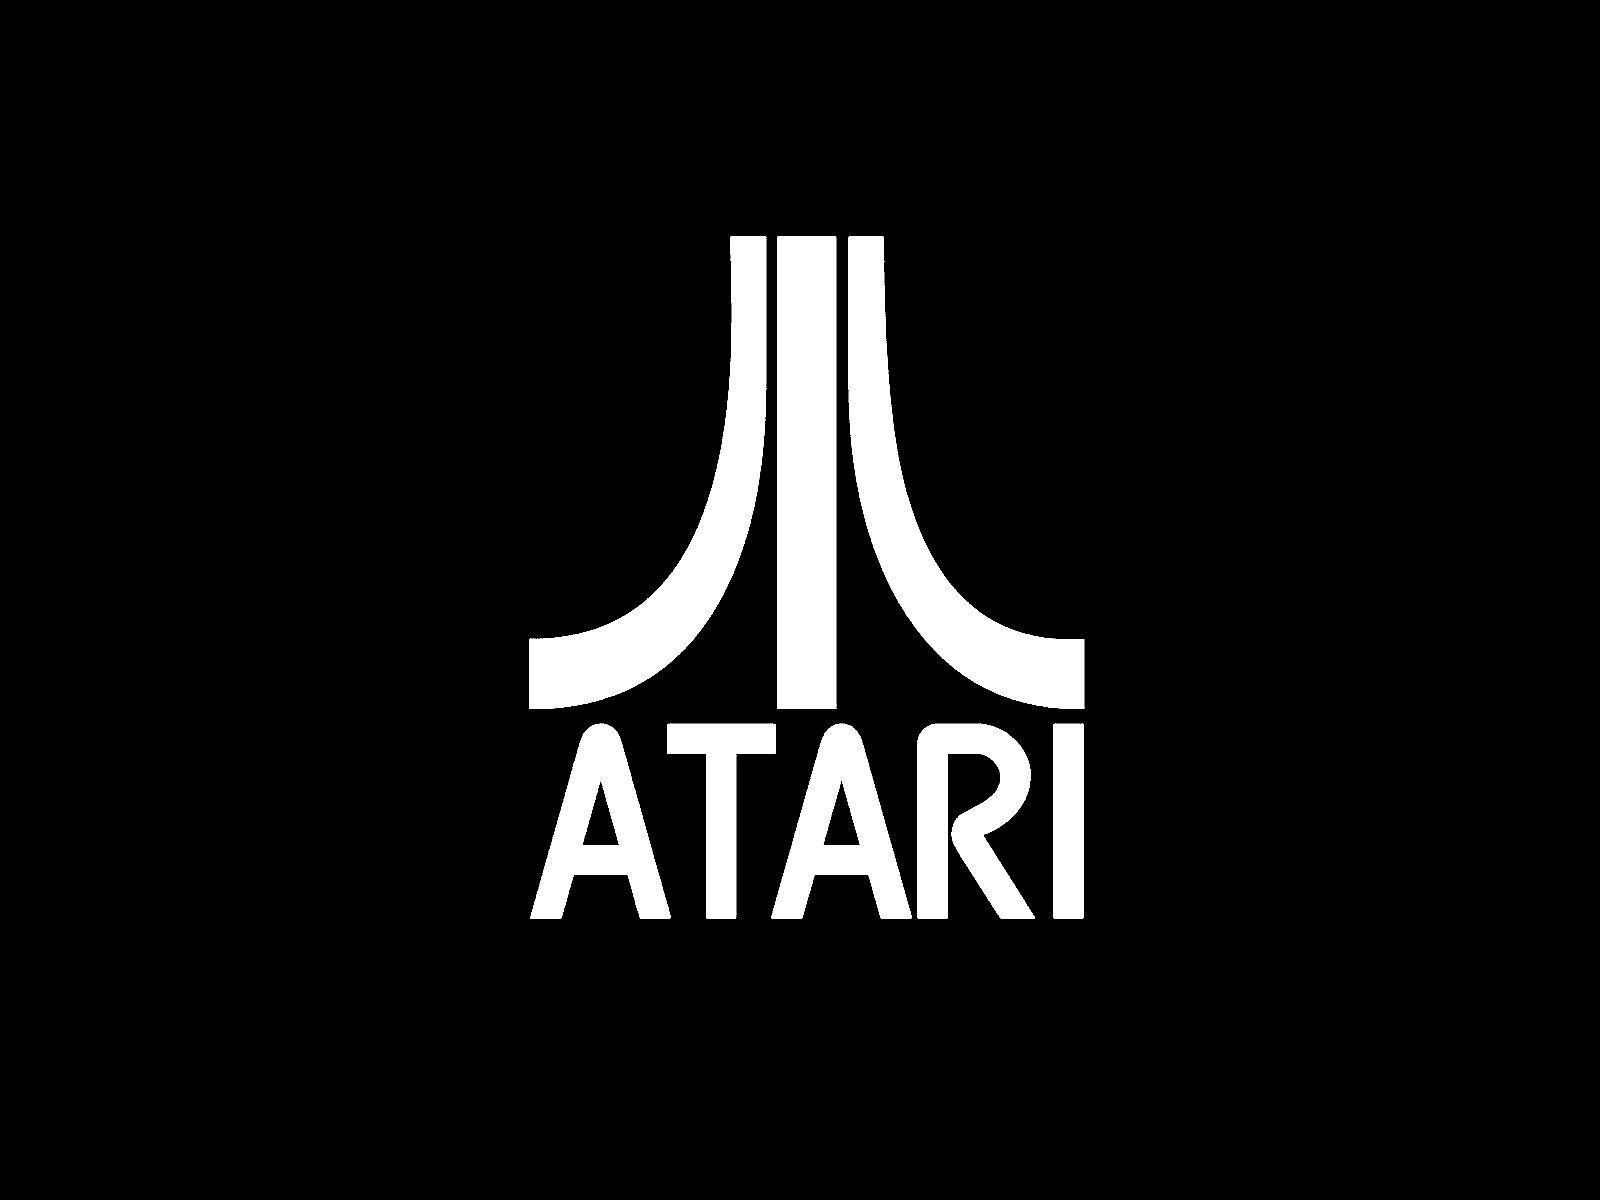 Metal Mulisha Wallpaper Desktop Free Download. Atari logo, Logos